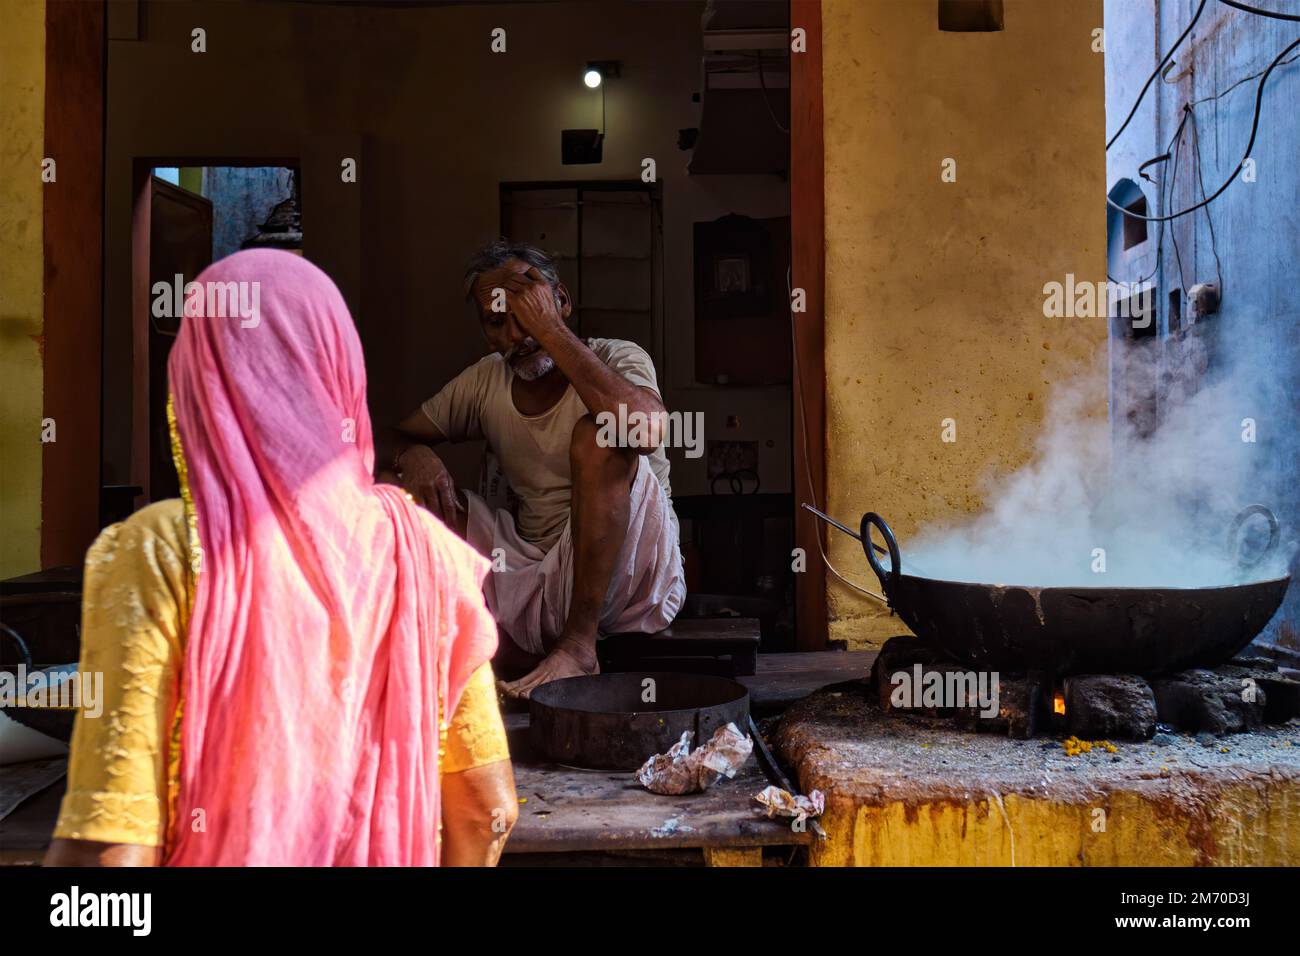 Pushkar, Inde - 7 novembre 2019: Femme achetant à partir de la rue nourriture stall cuisiner pain puri doux et rabri doux, condensé-lait-à base de plat Banque D'Images